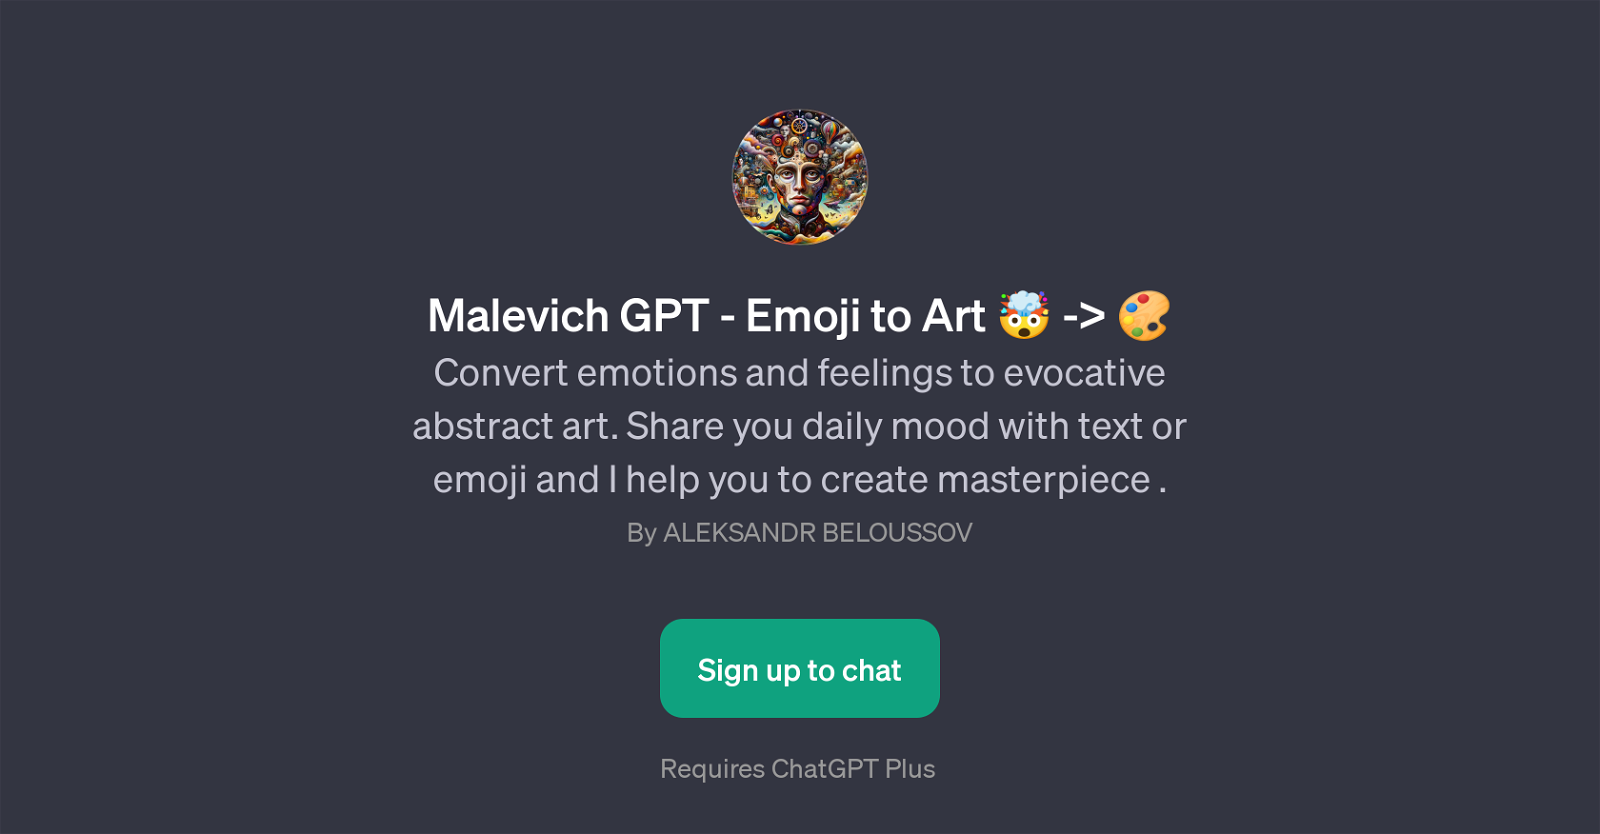 Malevich GPT - Emoji to Art website